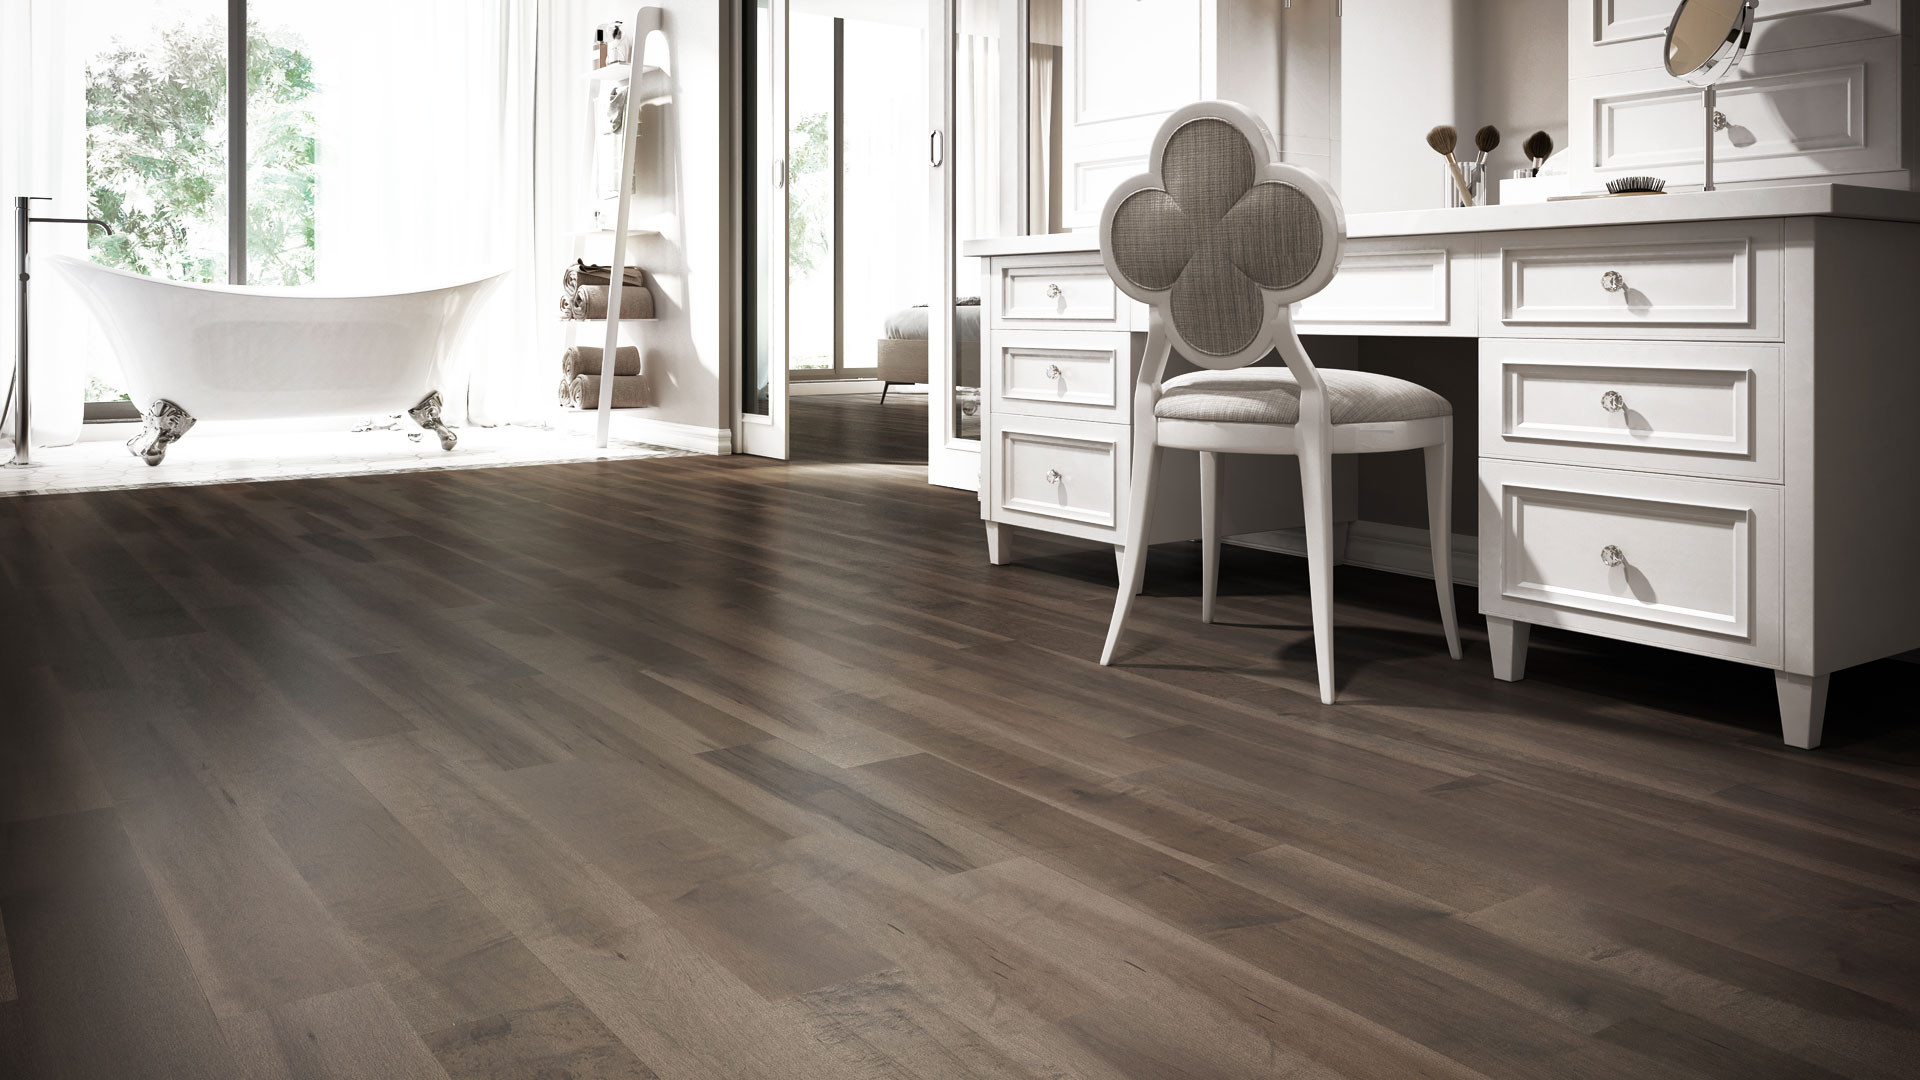 24 Ideal Hardwood Floor Color Trends 2016 2024 free download hardwood floor color trends 2016 of 4 latest hardwood flooring trends lauzon flooring inside top 4 hardwood flooring trends